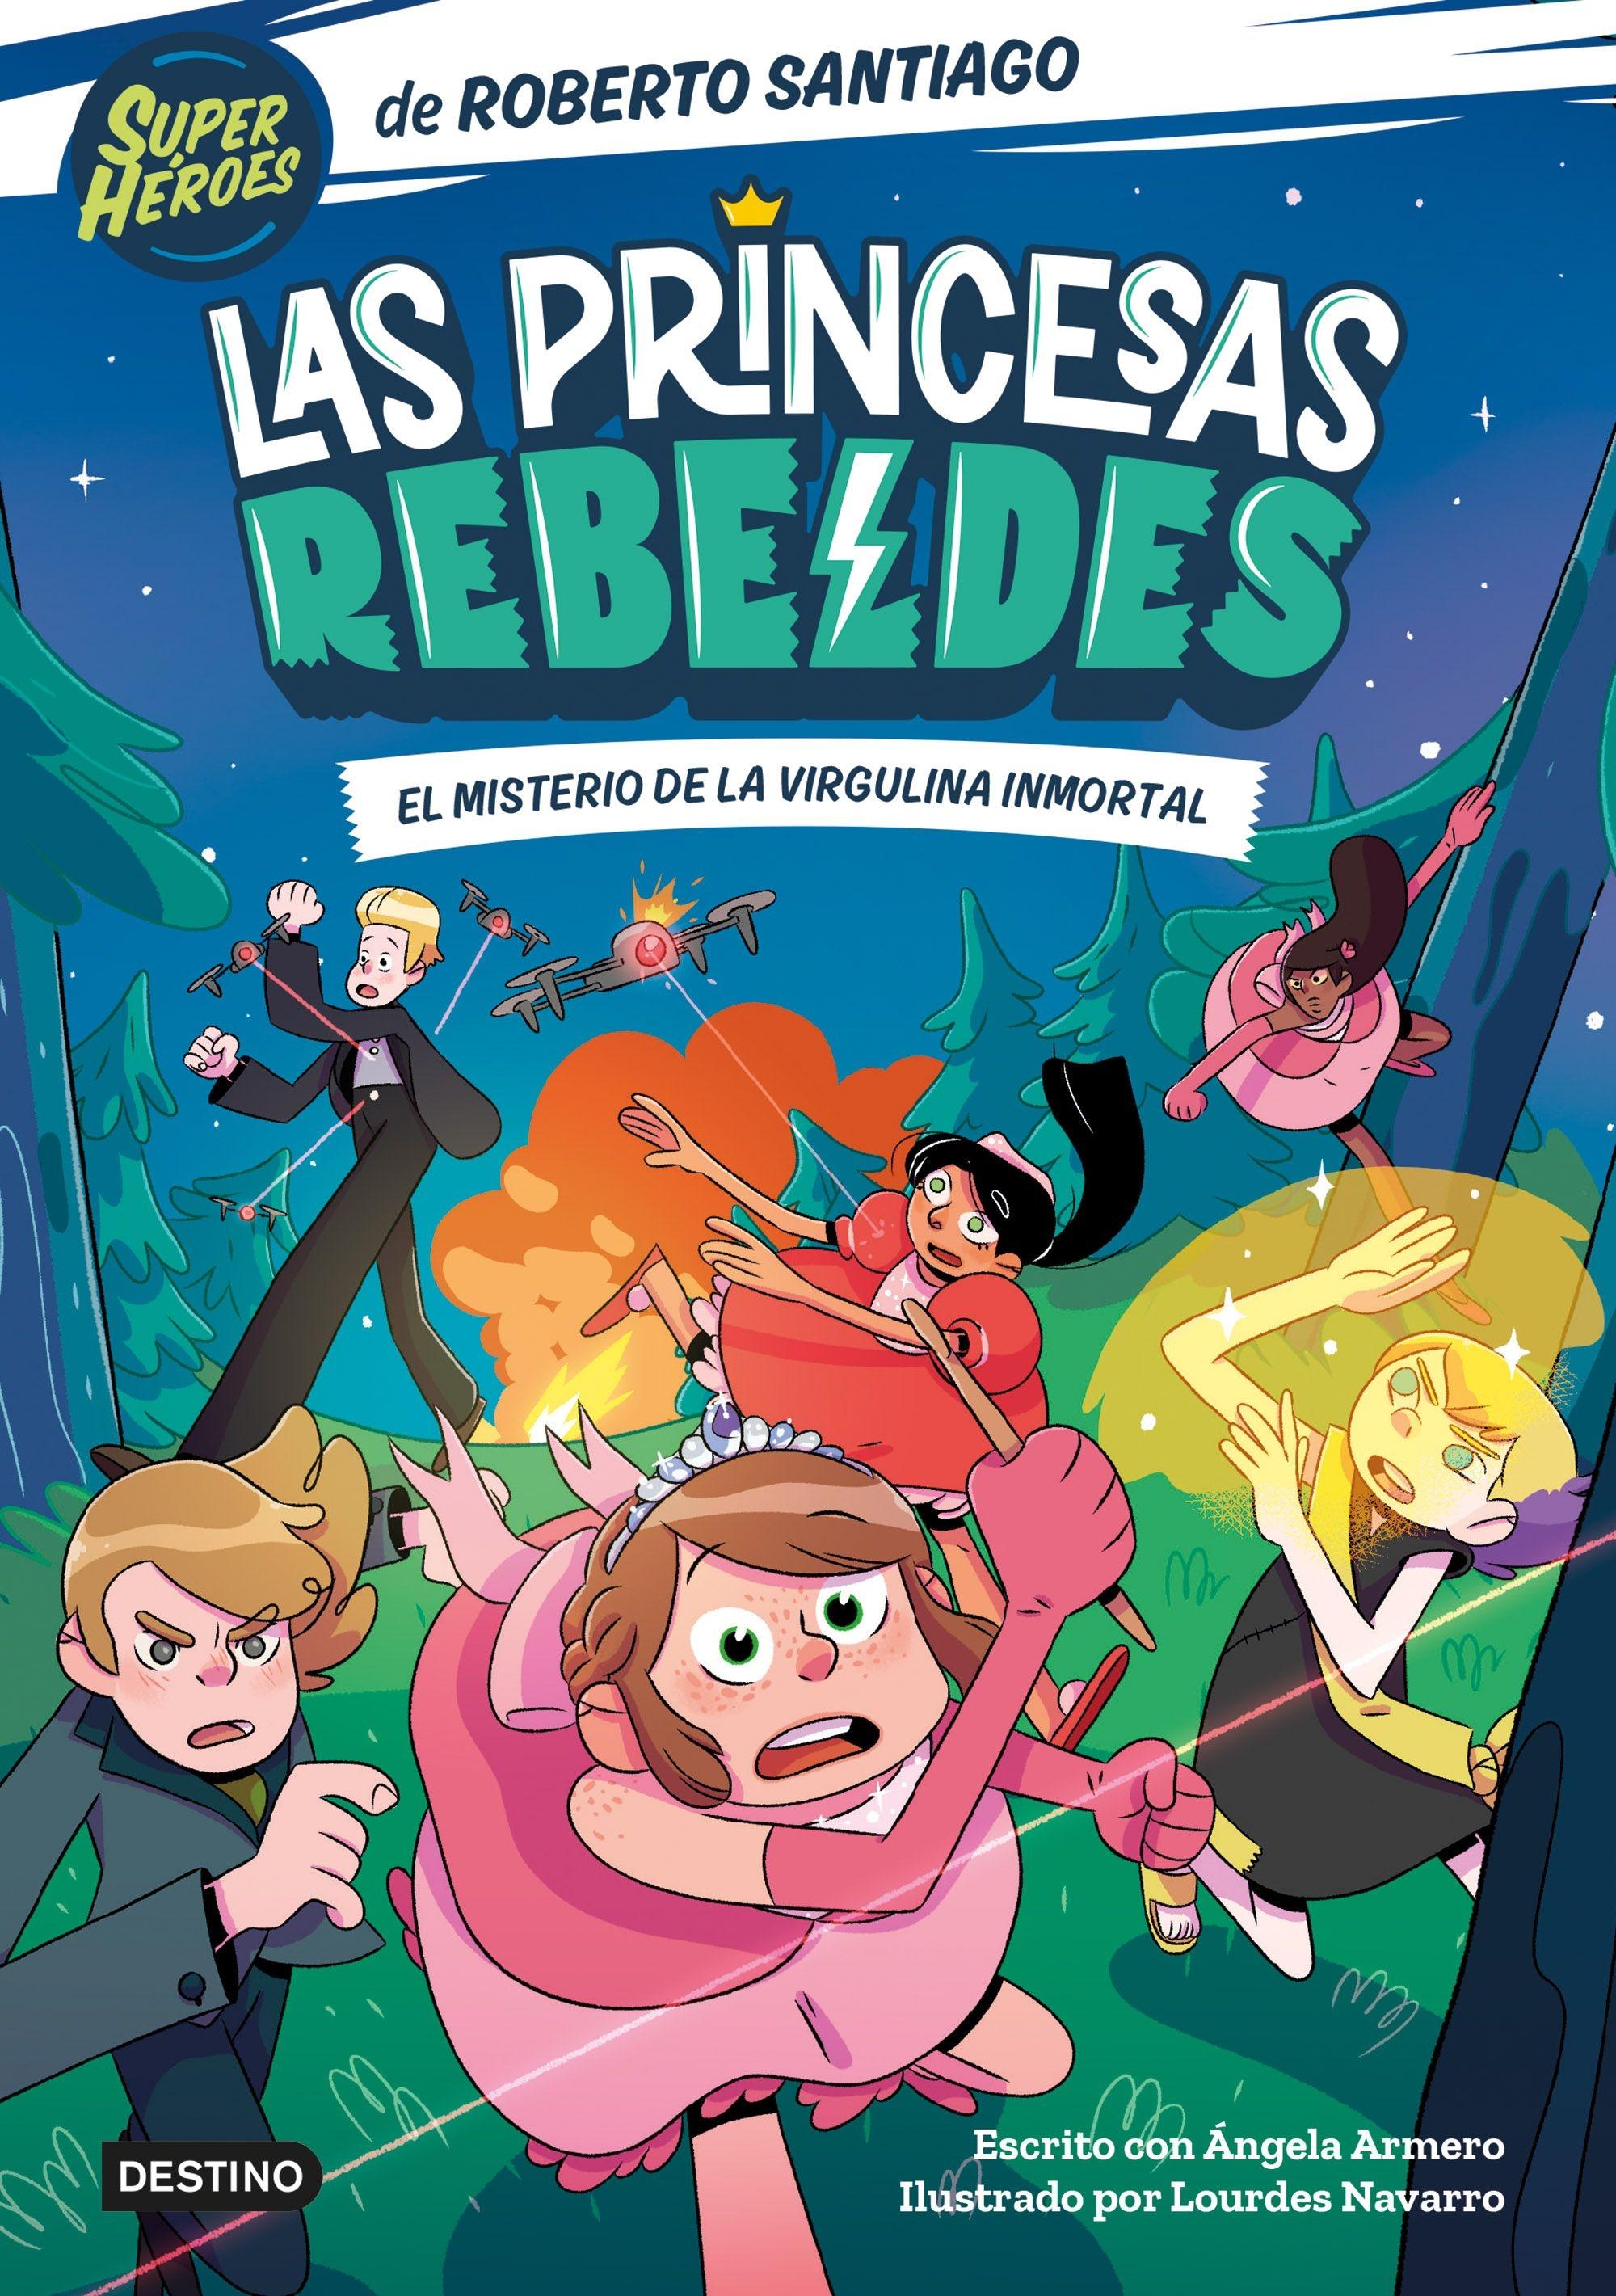 Las Princesas Rebeldes 1 "El misterio de la virgulina inmortal". 